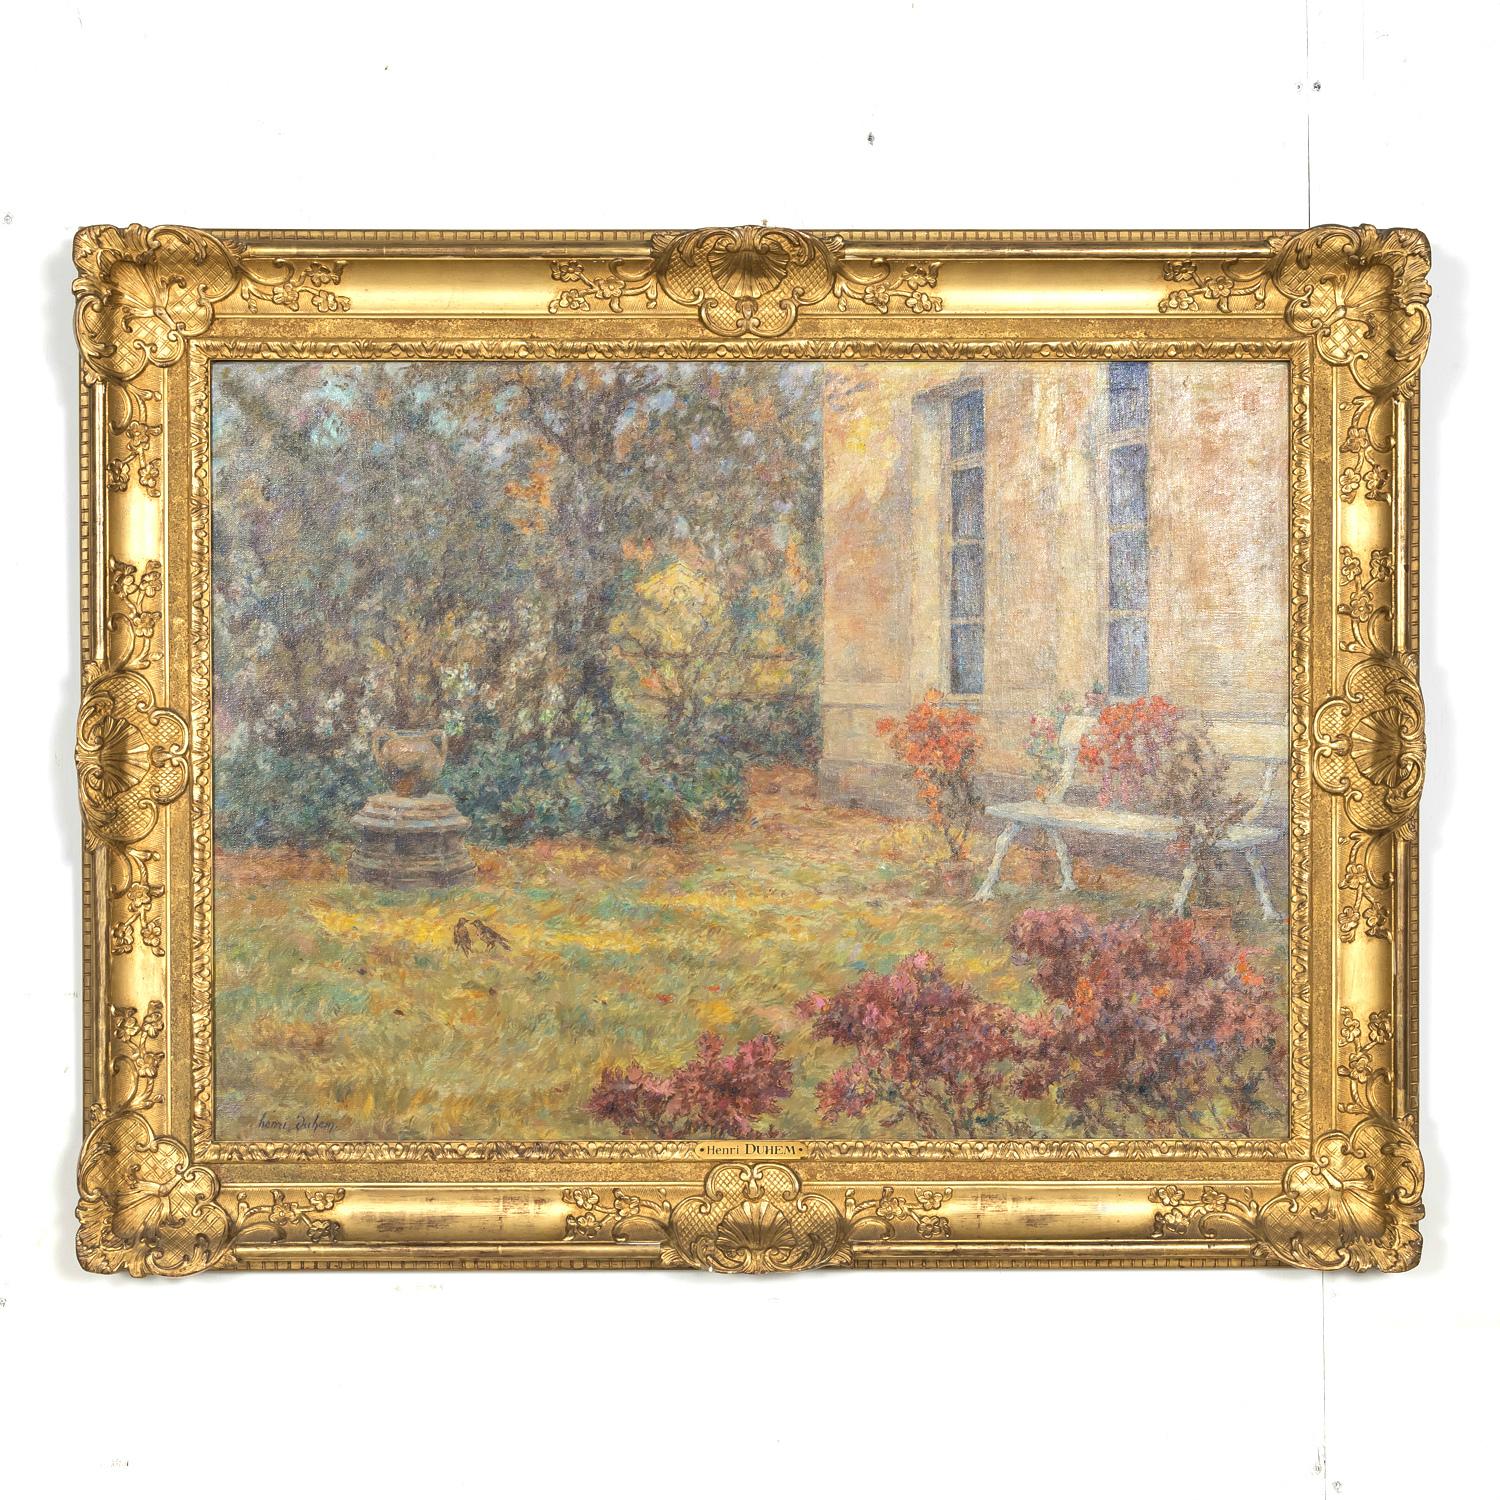 Hand-Painted Large Framed French Impressionist Oil Garden Landscape by Henri Duhem, Signed